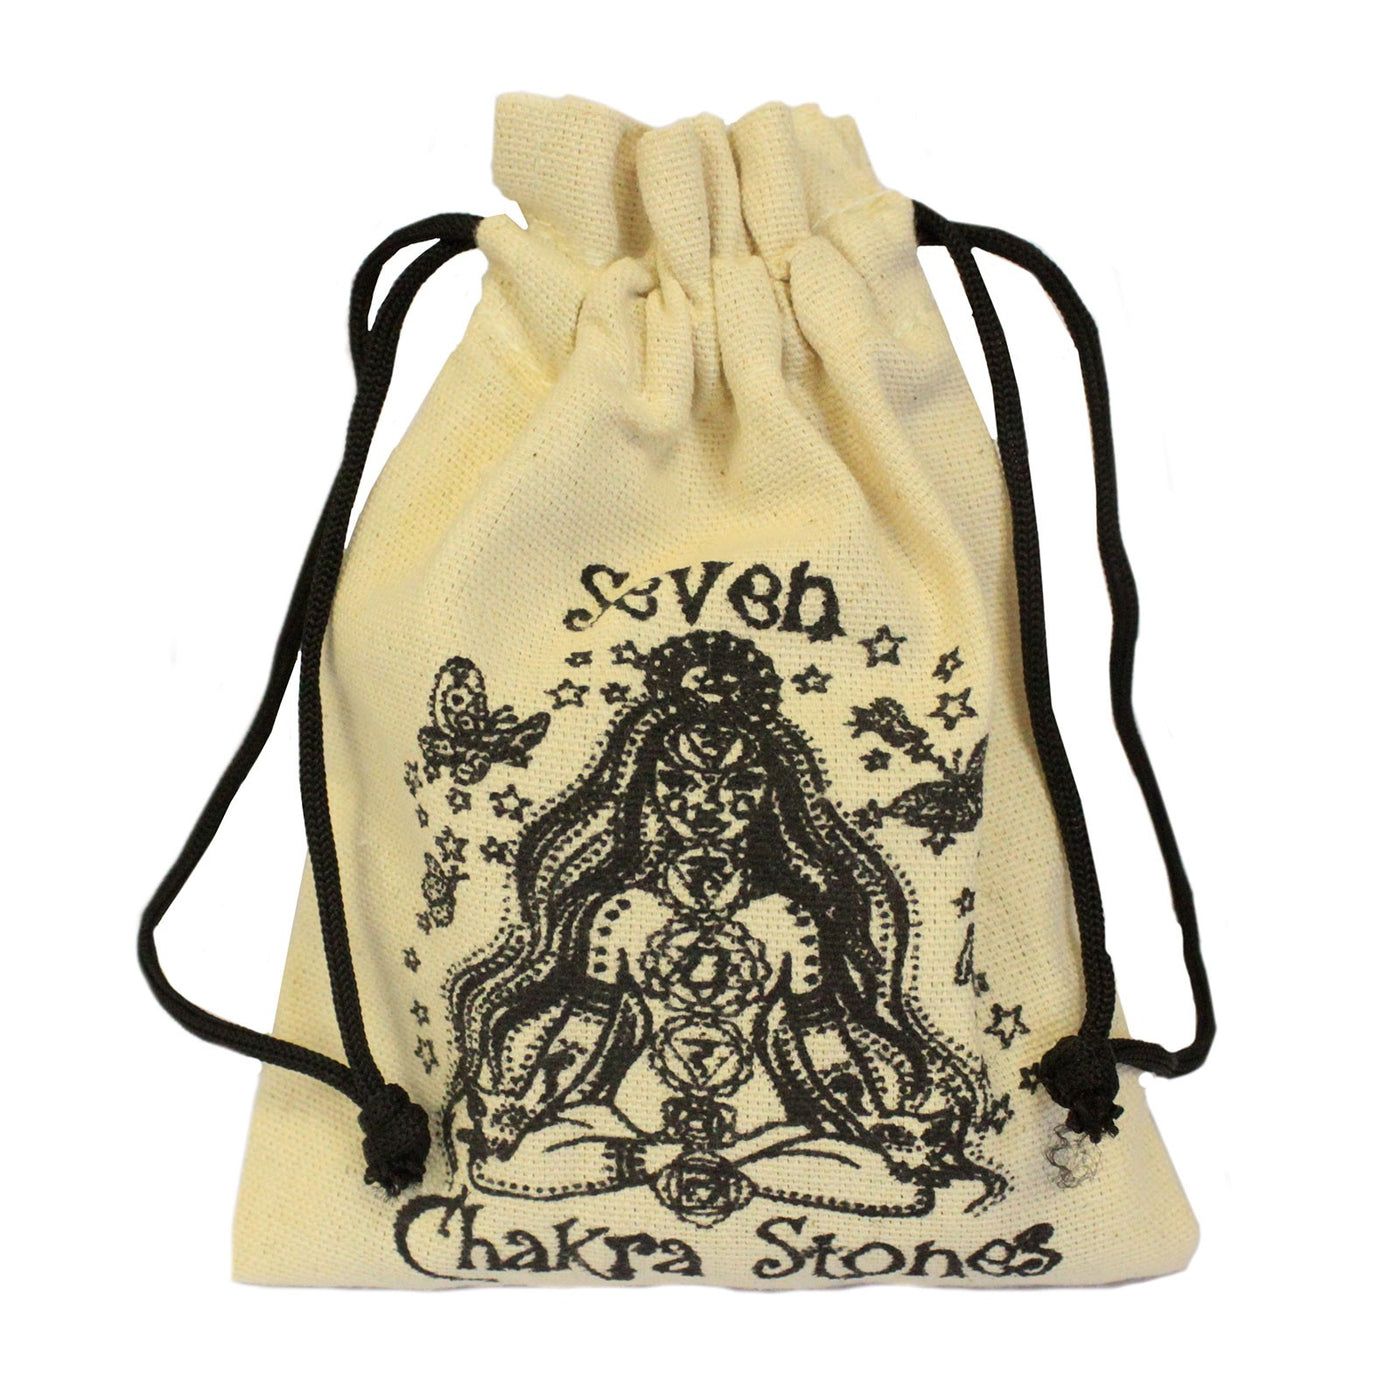 Oval Sodalite Stone Chakra Stone Gift Set.